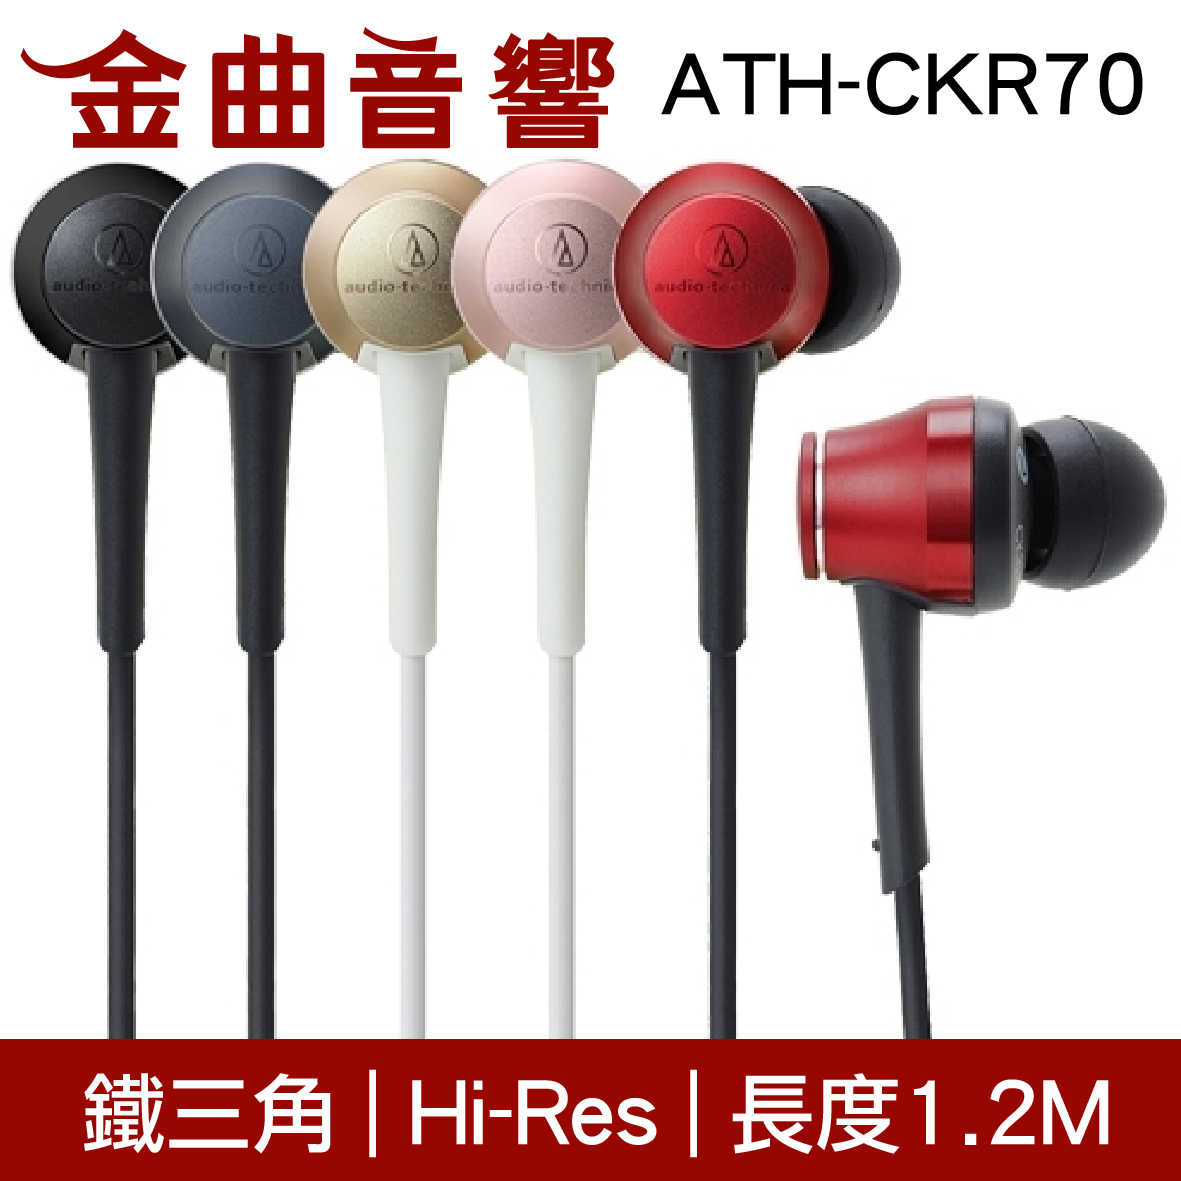 鐵三角 ATH-CKR70 香檳金 耳道式耳機 | 金曲音響